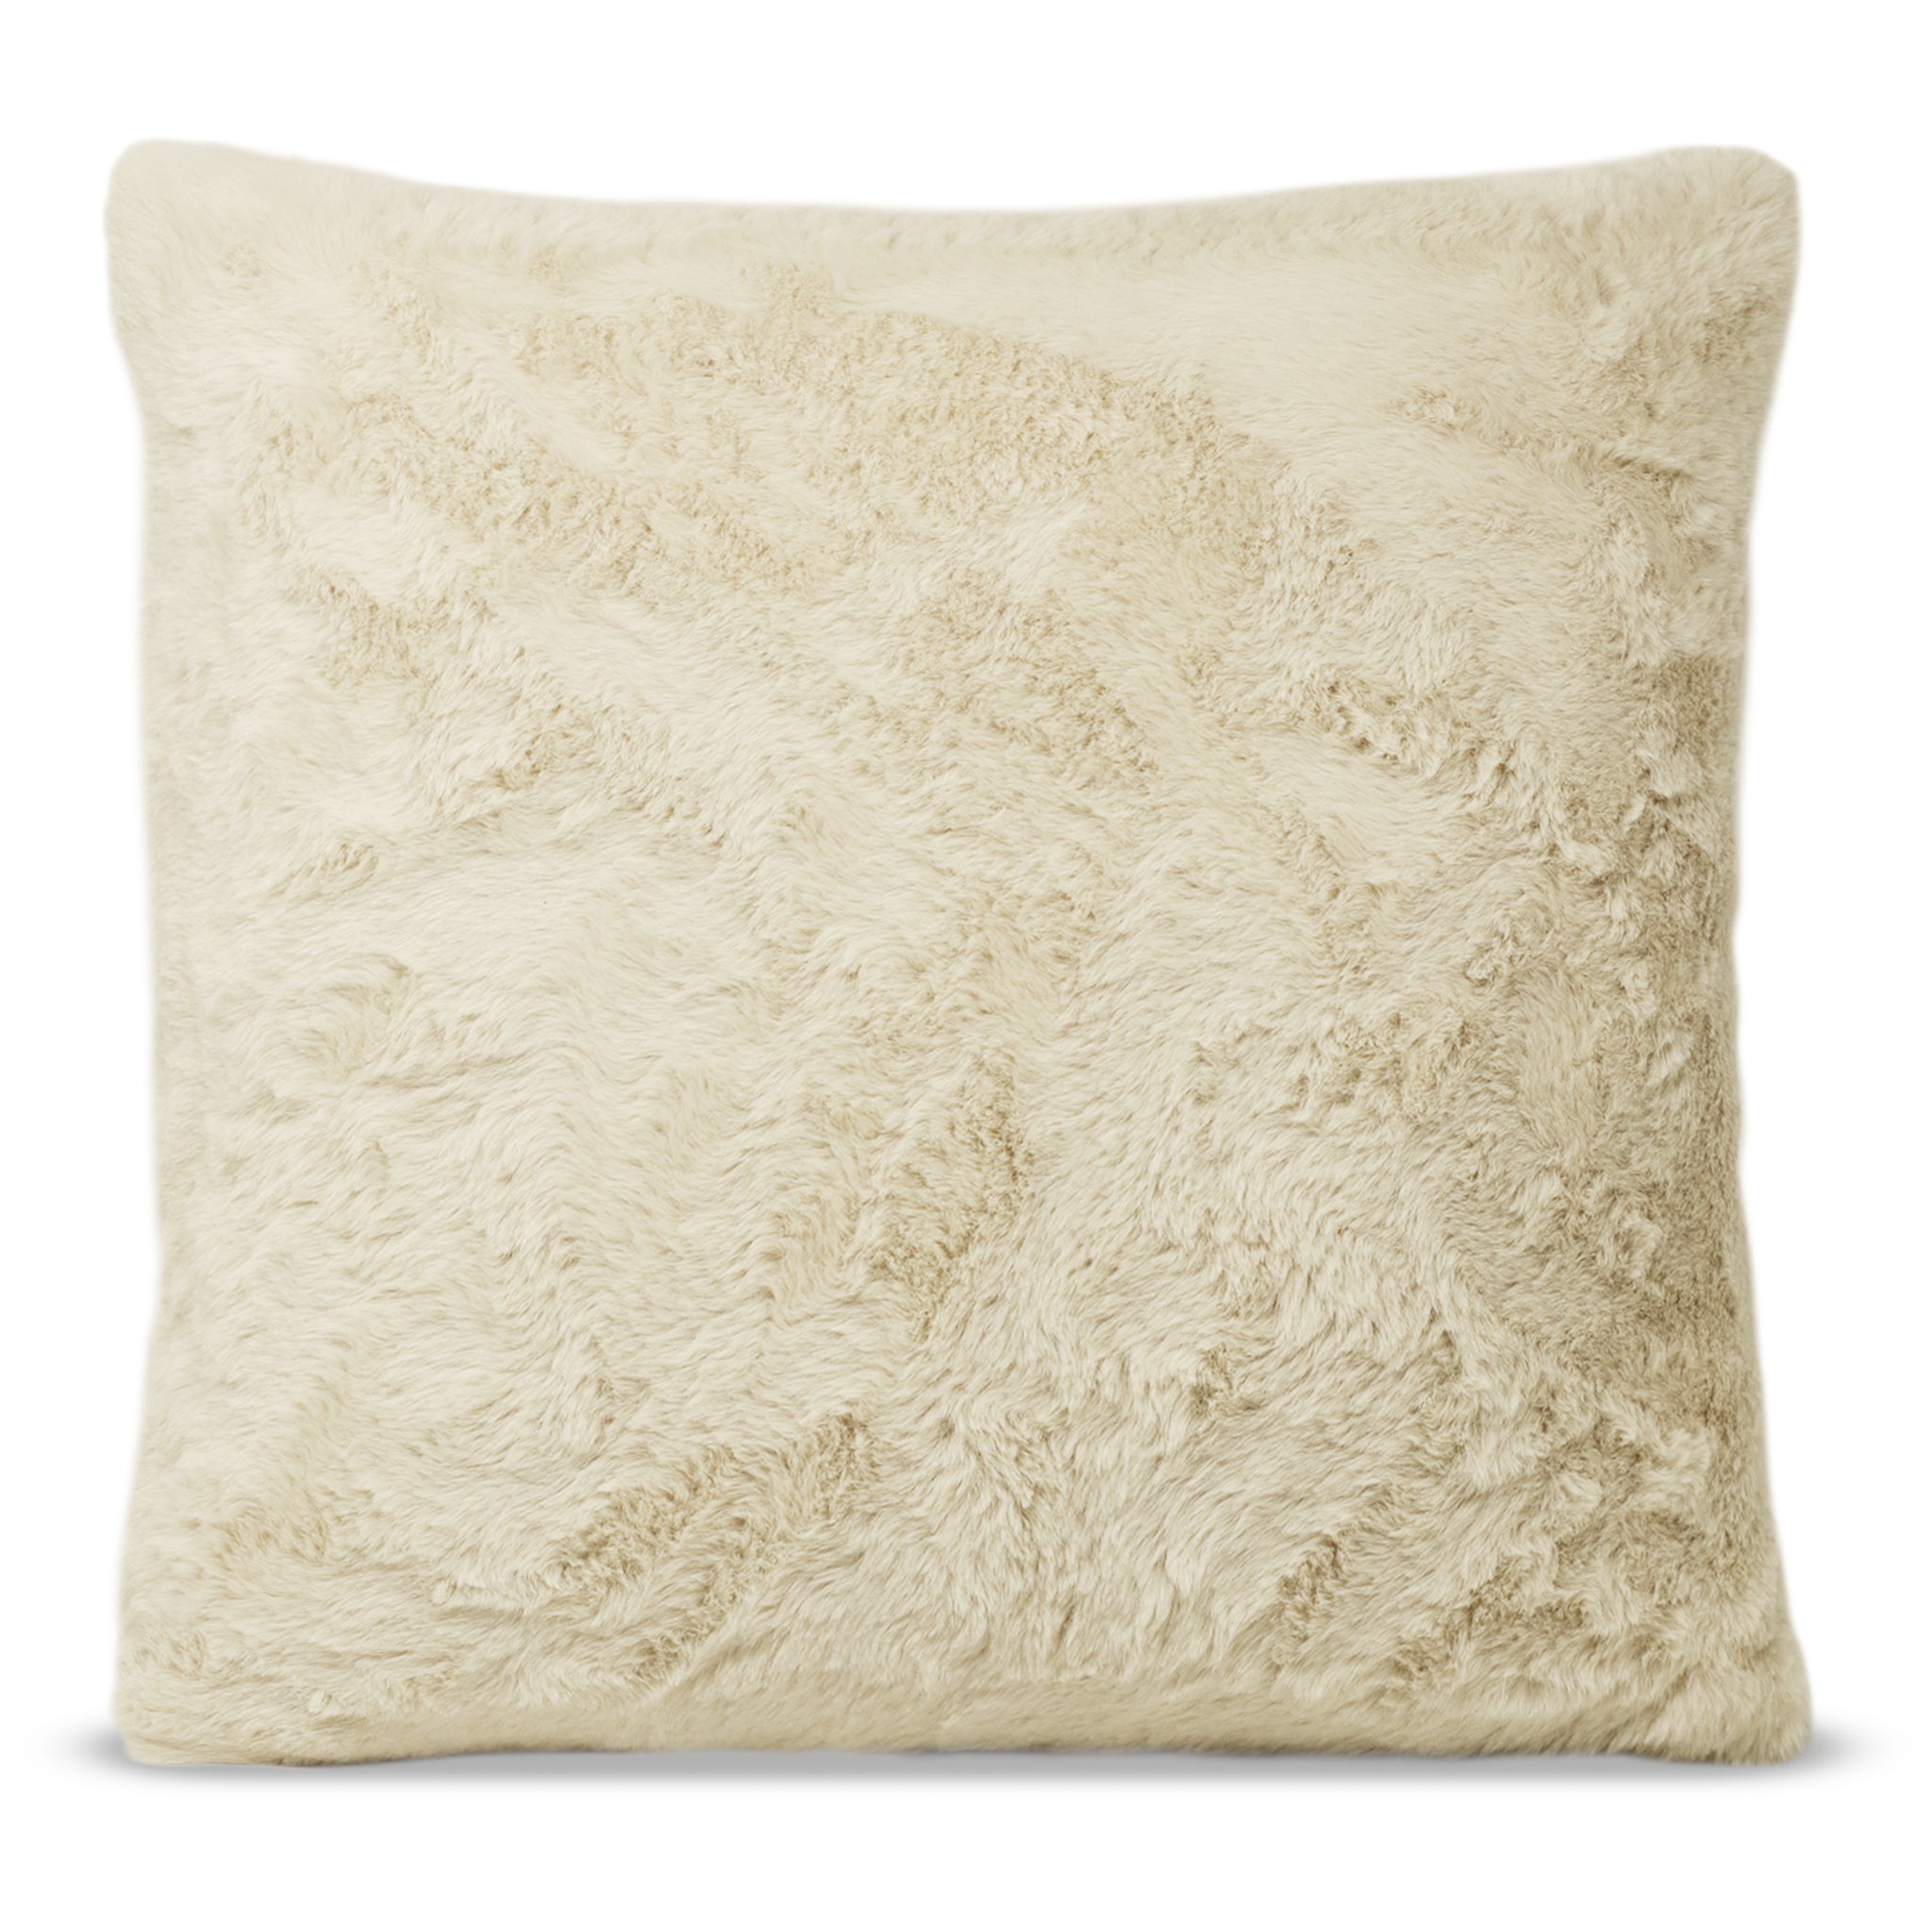 Faux Fur Pillow Cover, Soft Dense Pile Polyester Fur Pillow Case